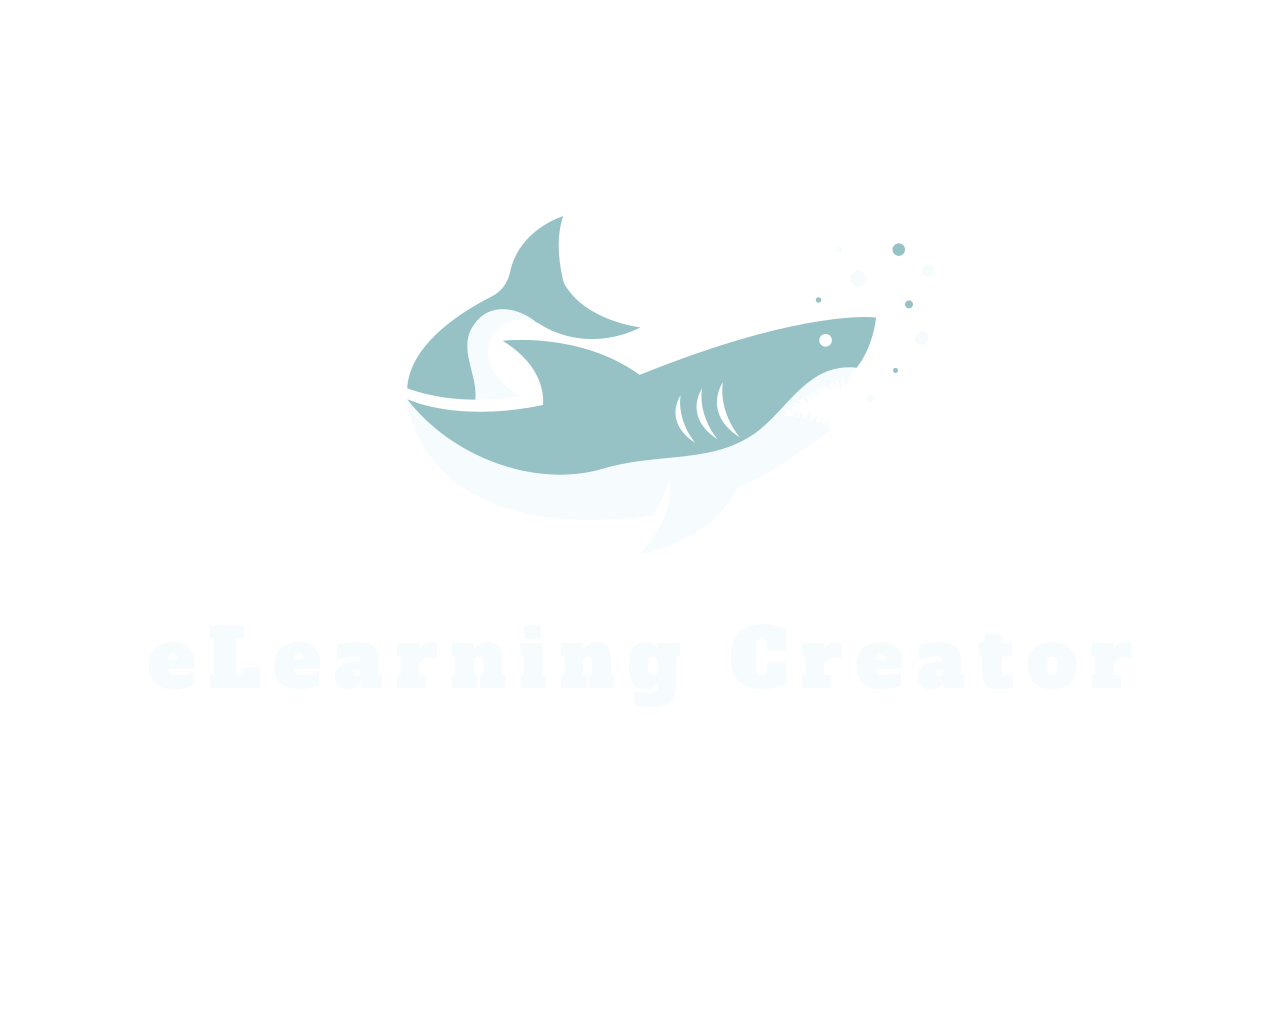 eLearning Creator